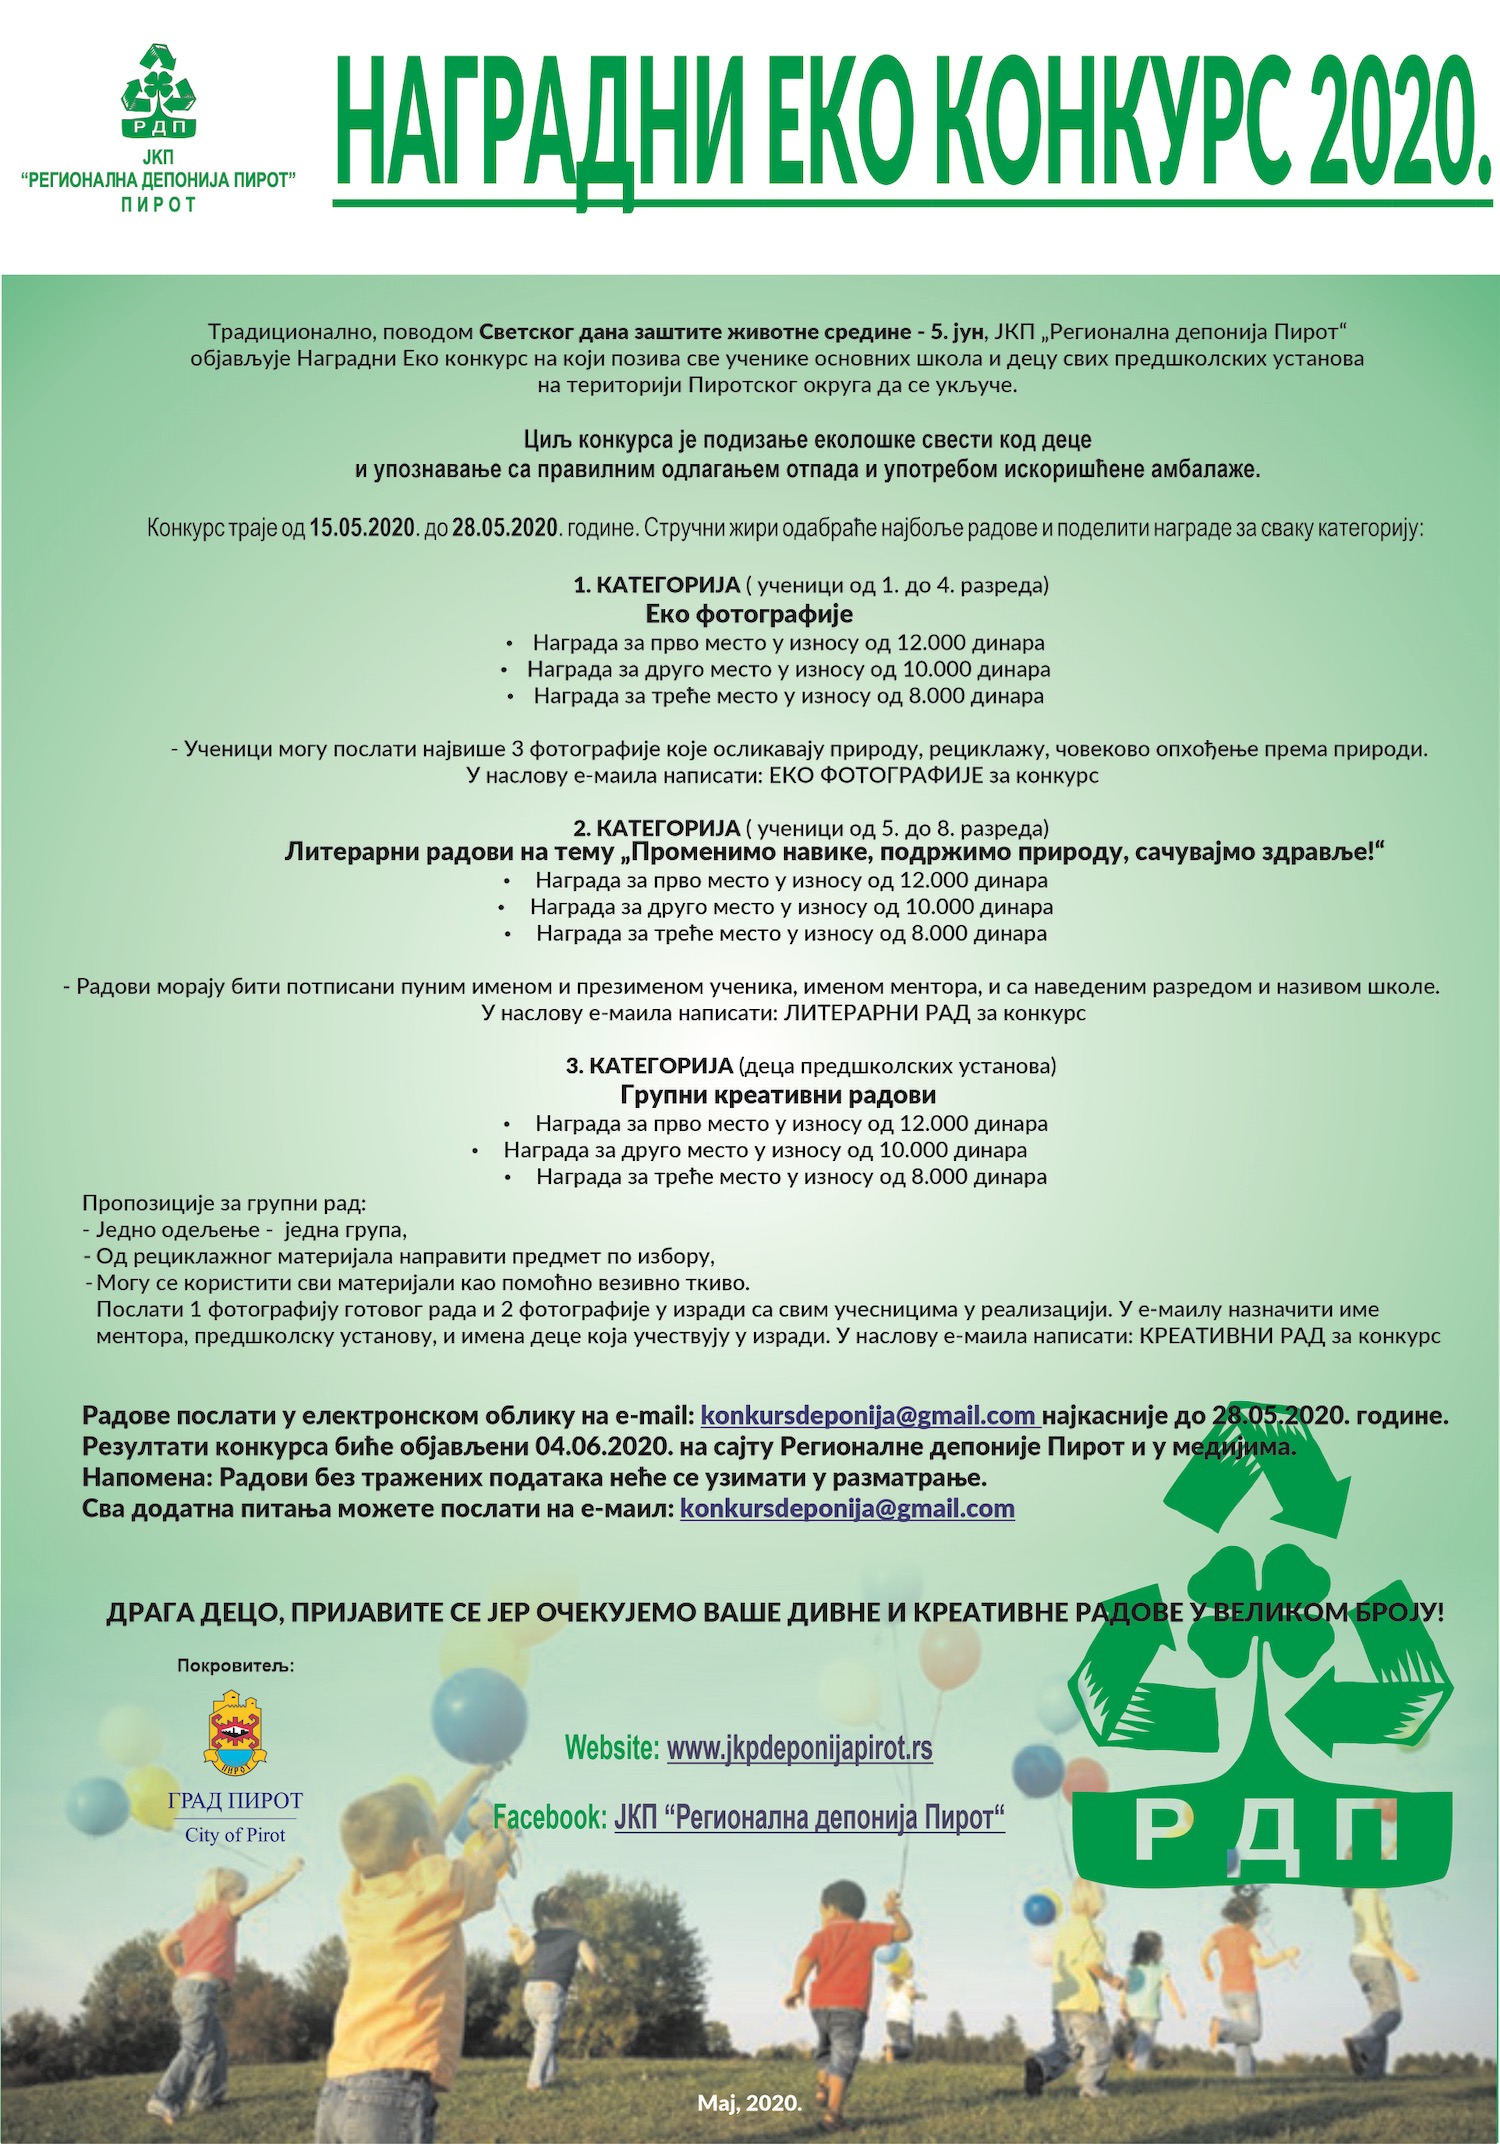 Photo of Povodom Svetskog dana zaštite životne srednije Regionalna deponija objavljuje nagradni Eko konkurs za pirotske mališane